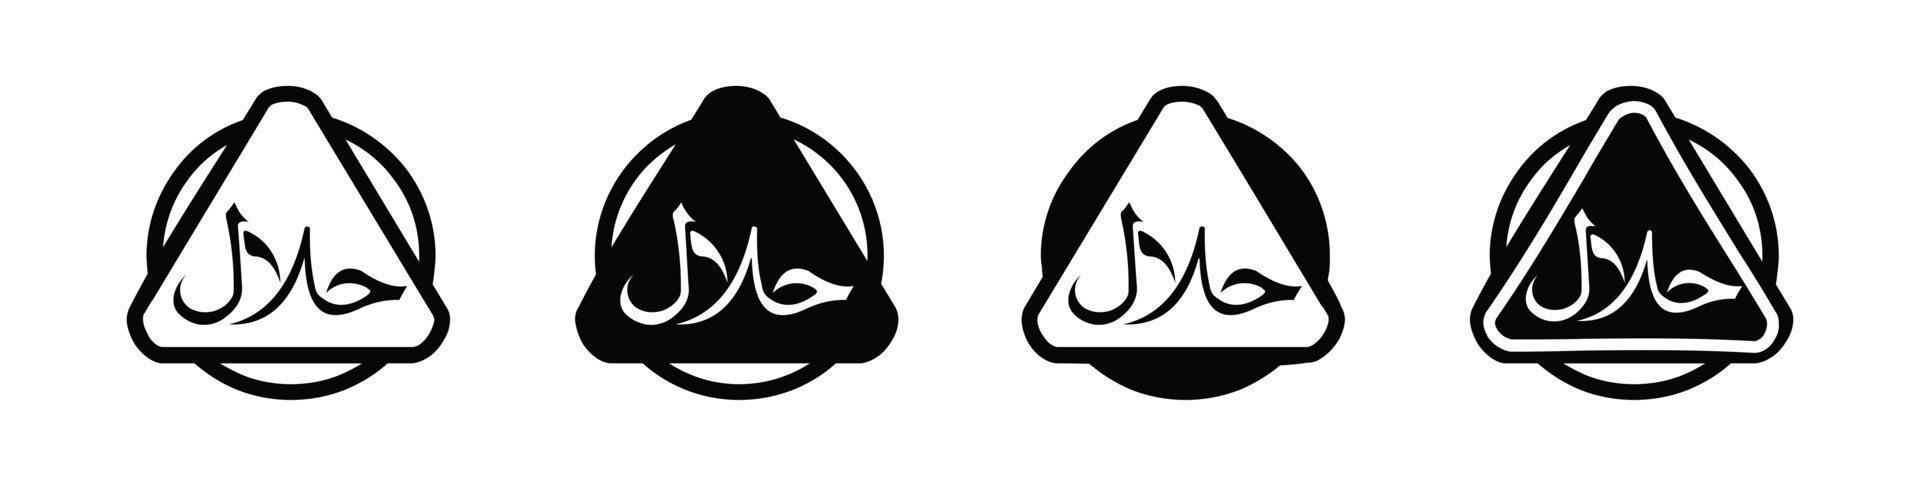 conjunto de ícones halal produto emblema vector illustration.set de rótulos de produtos alimentares halal, etiqueta de certificado de sinal halal vector.